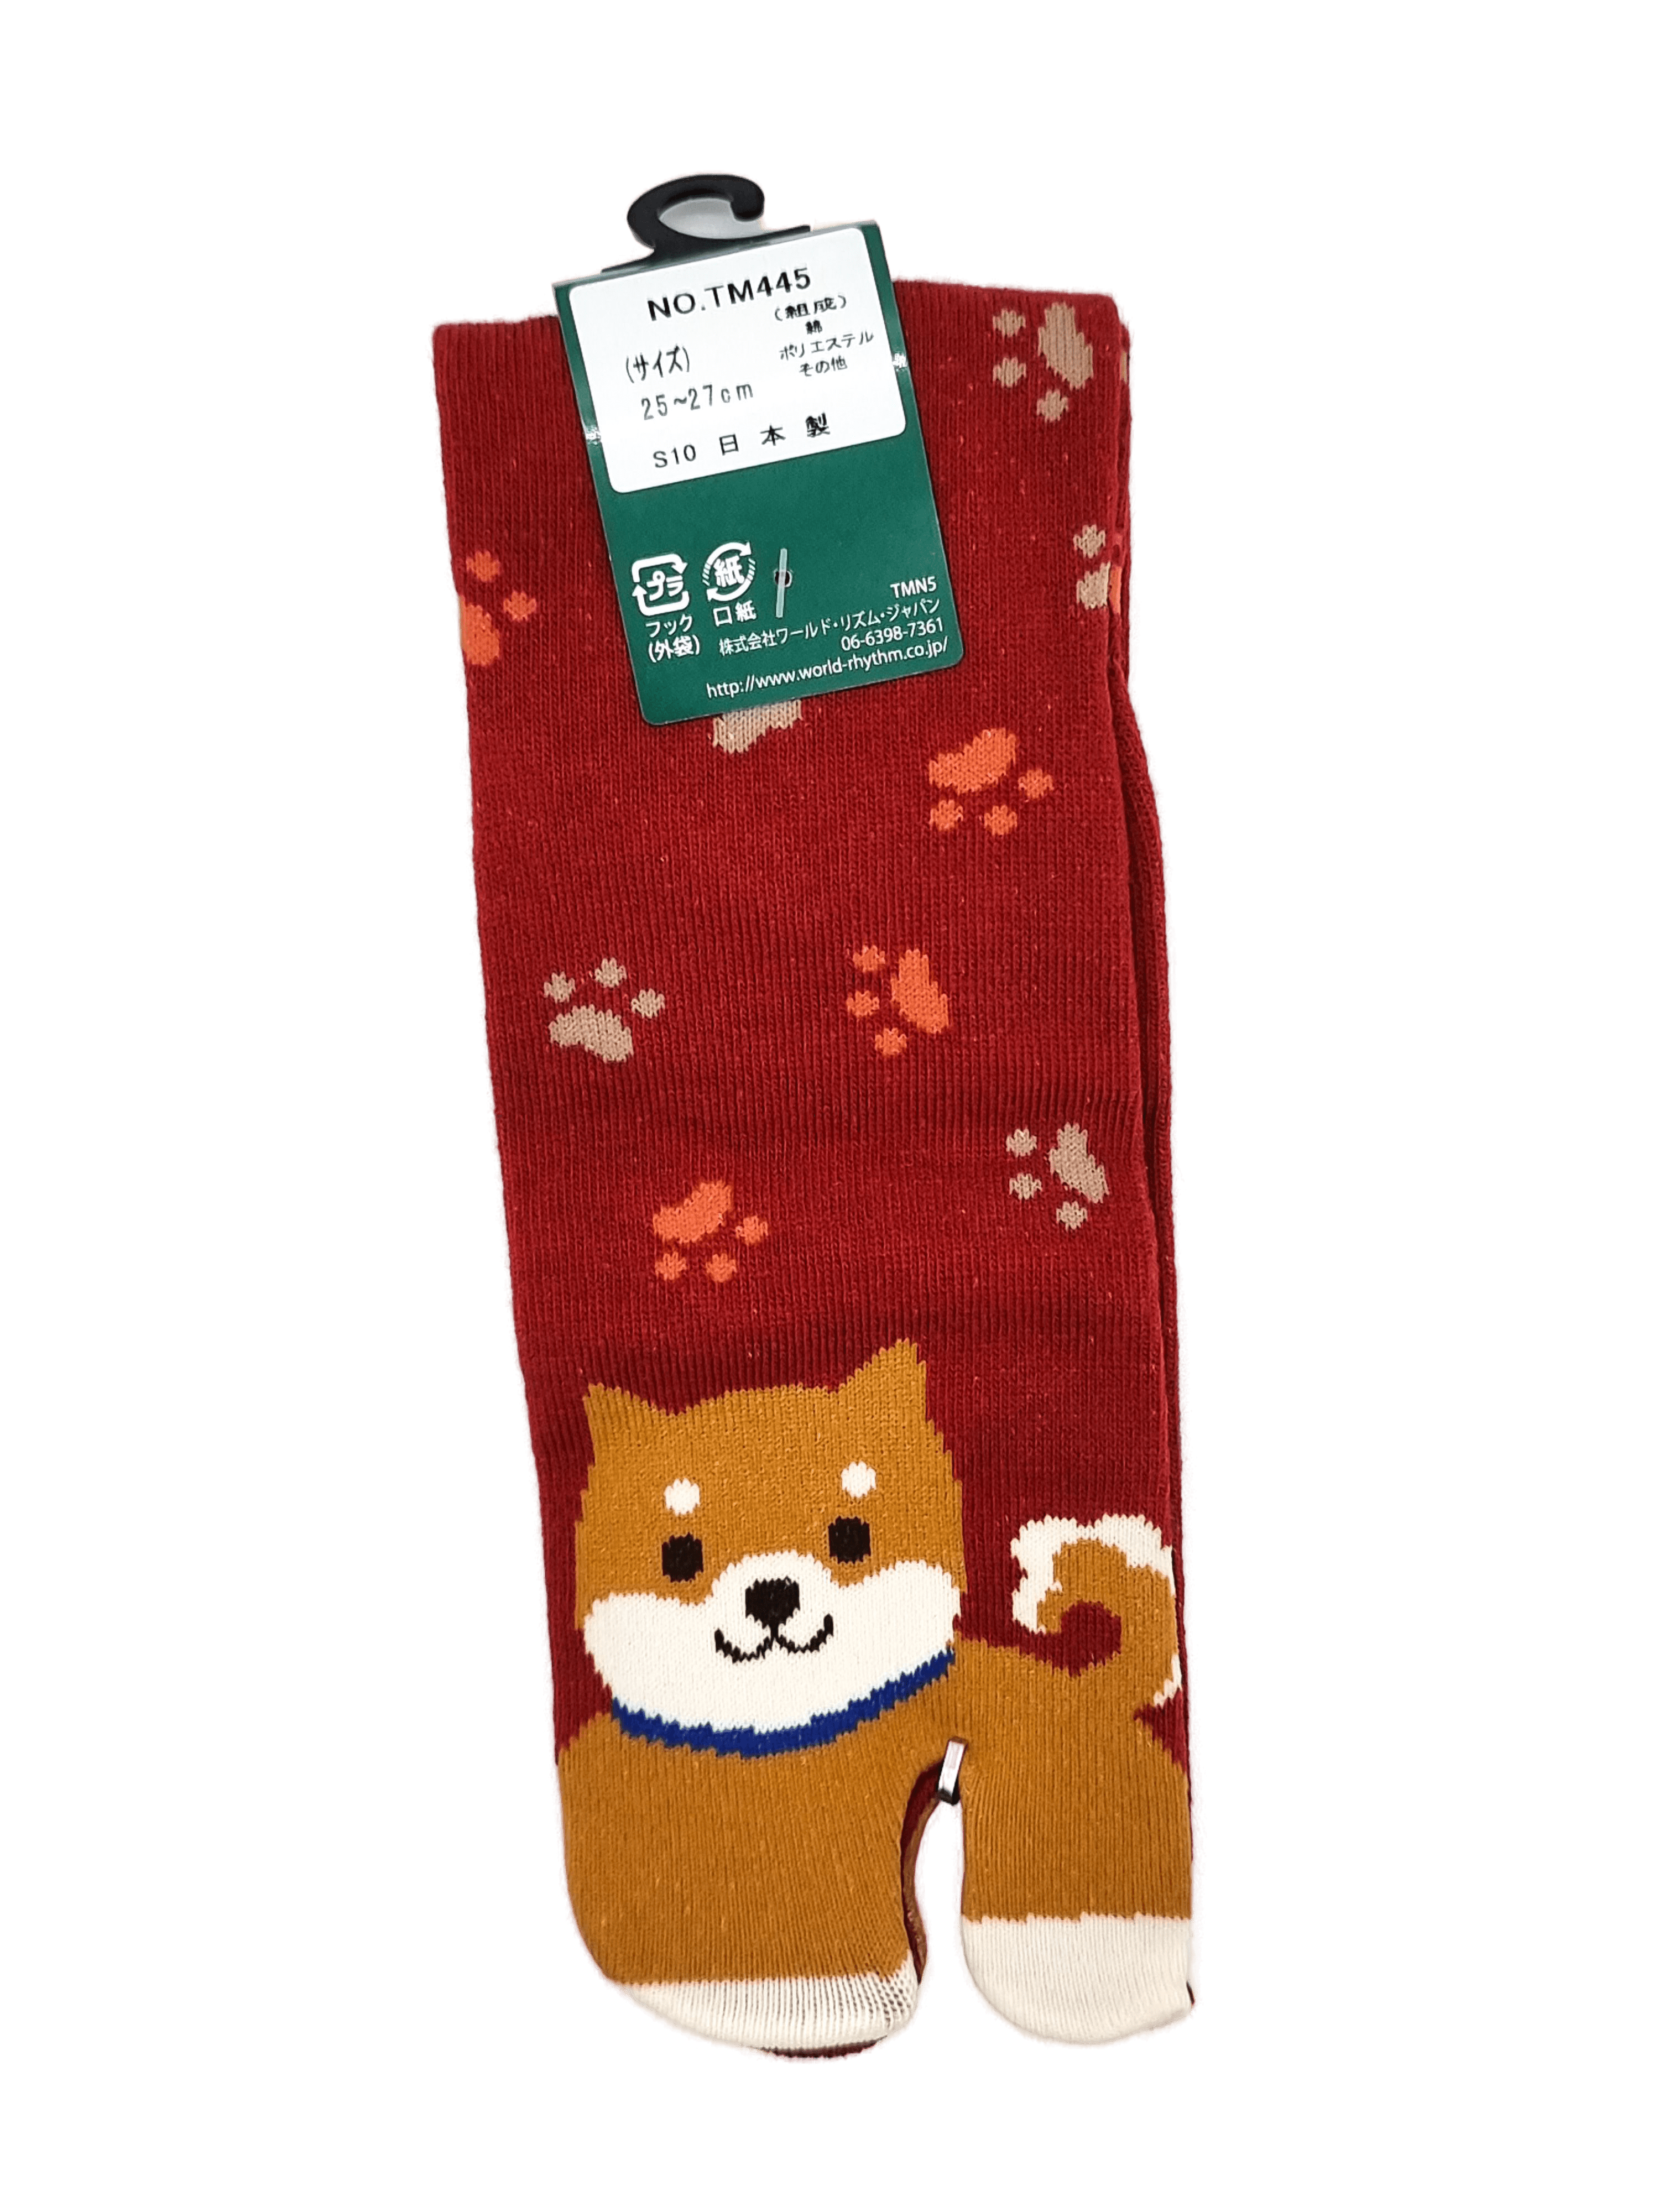 Linke braune Tabi Socke mit Shiba Inu in rot